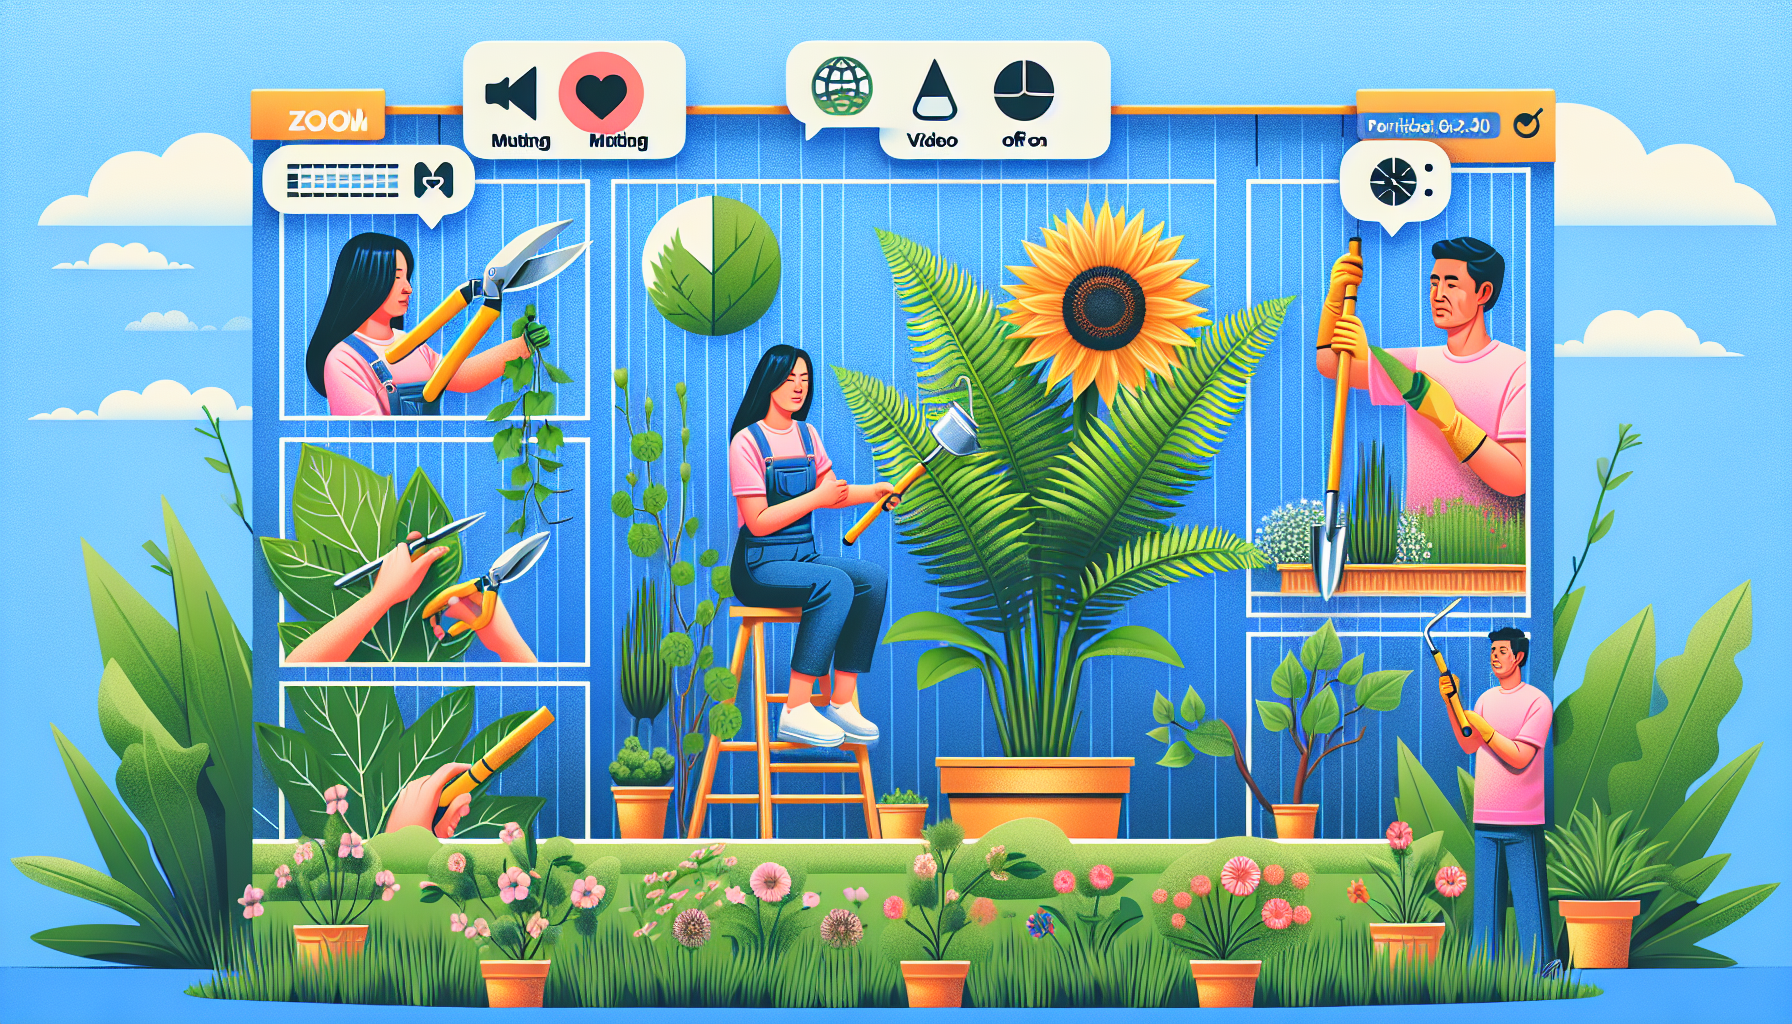 découvrez comment utiliser zoom pour recevoir des conseils d'experts en jardinage et améliorer vos compétences pour une expérience de jardinage réussie.